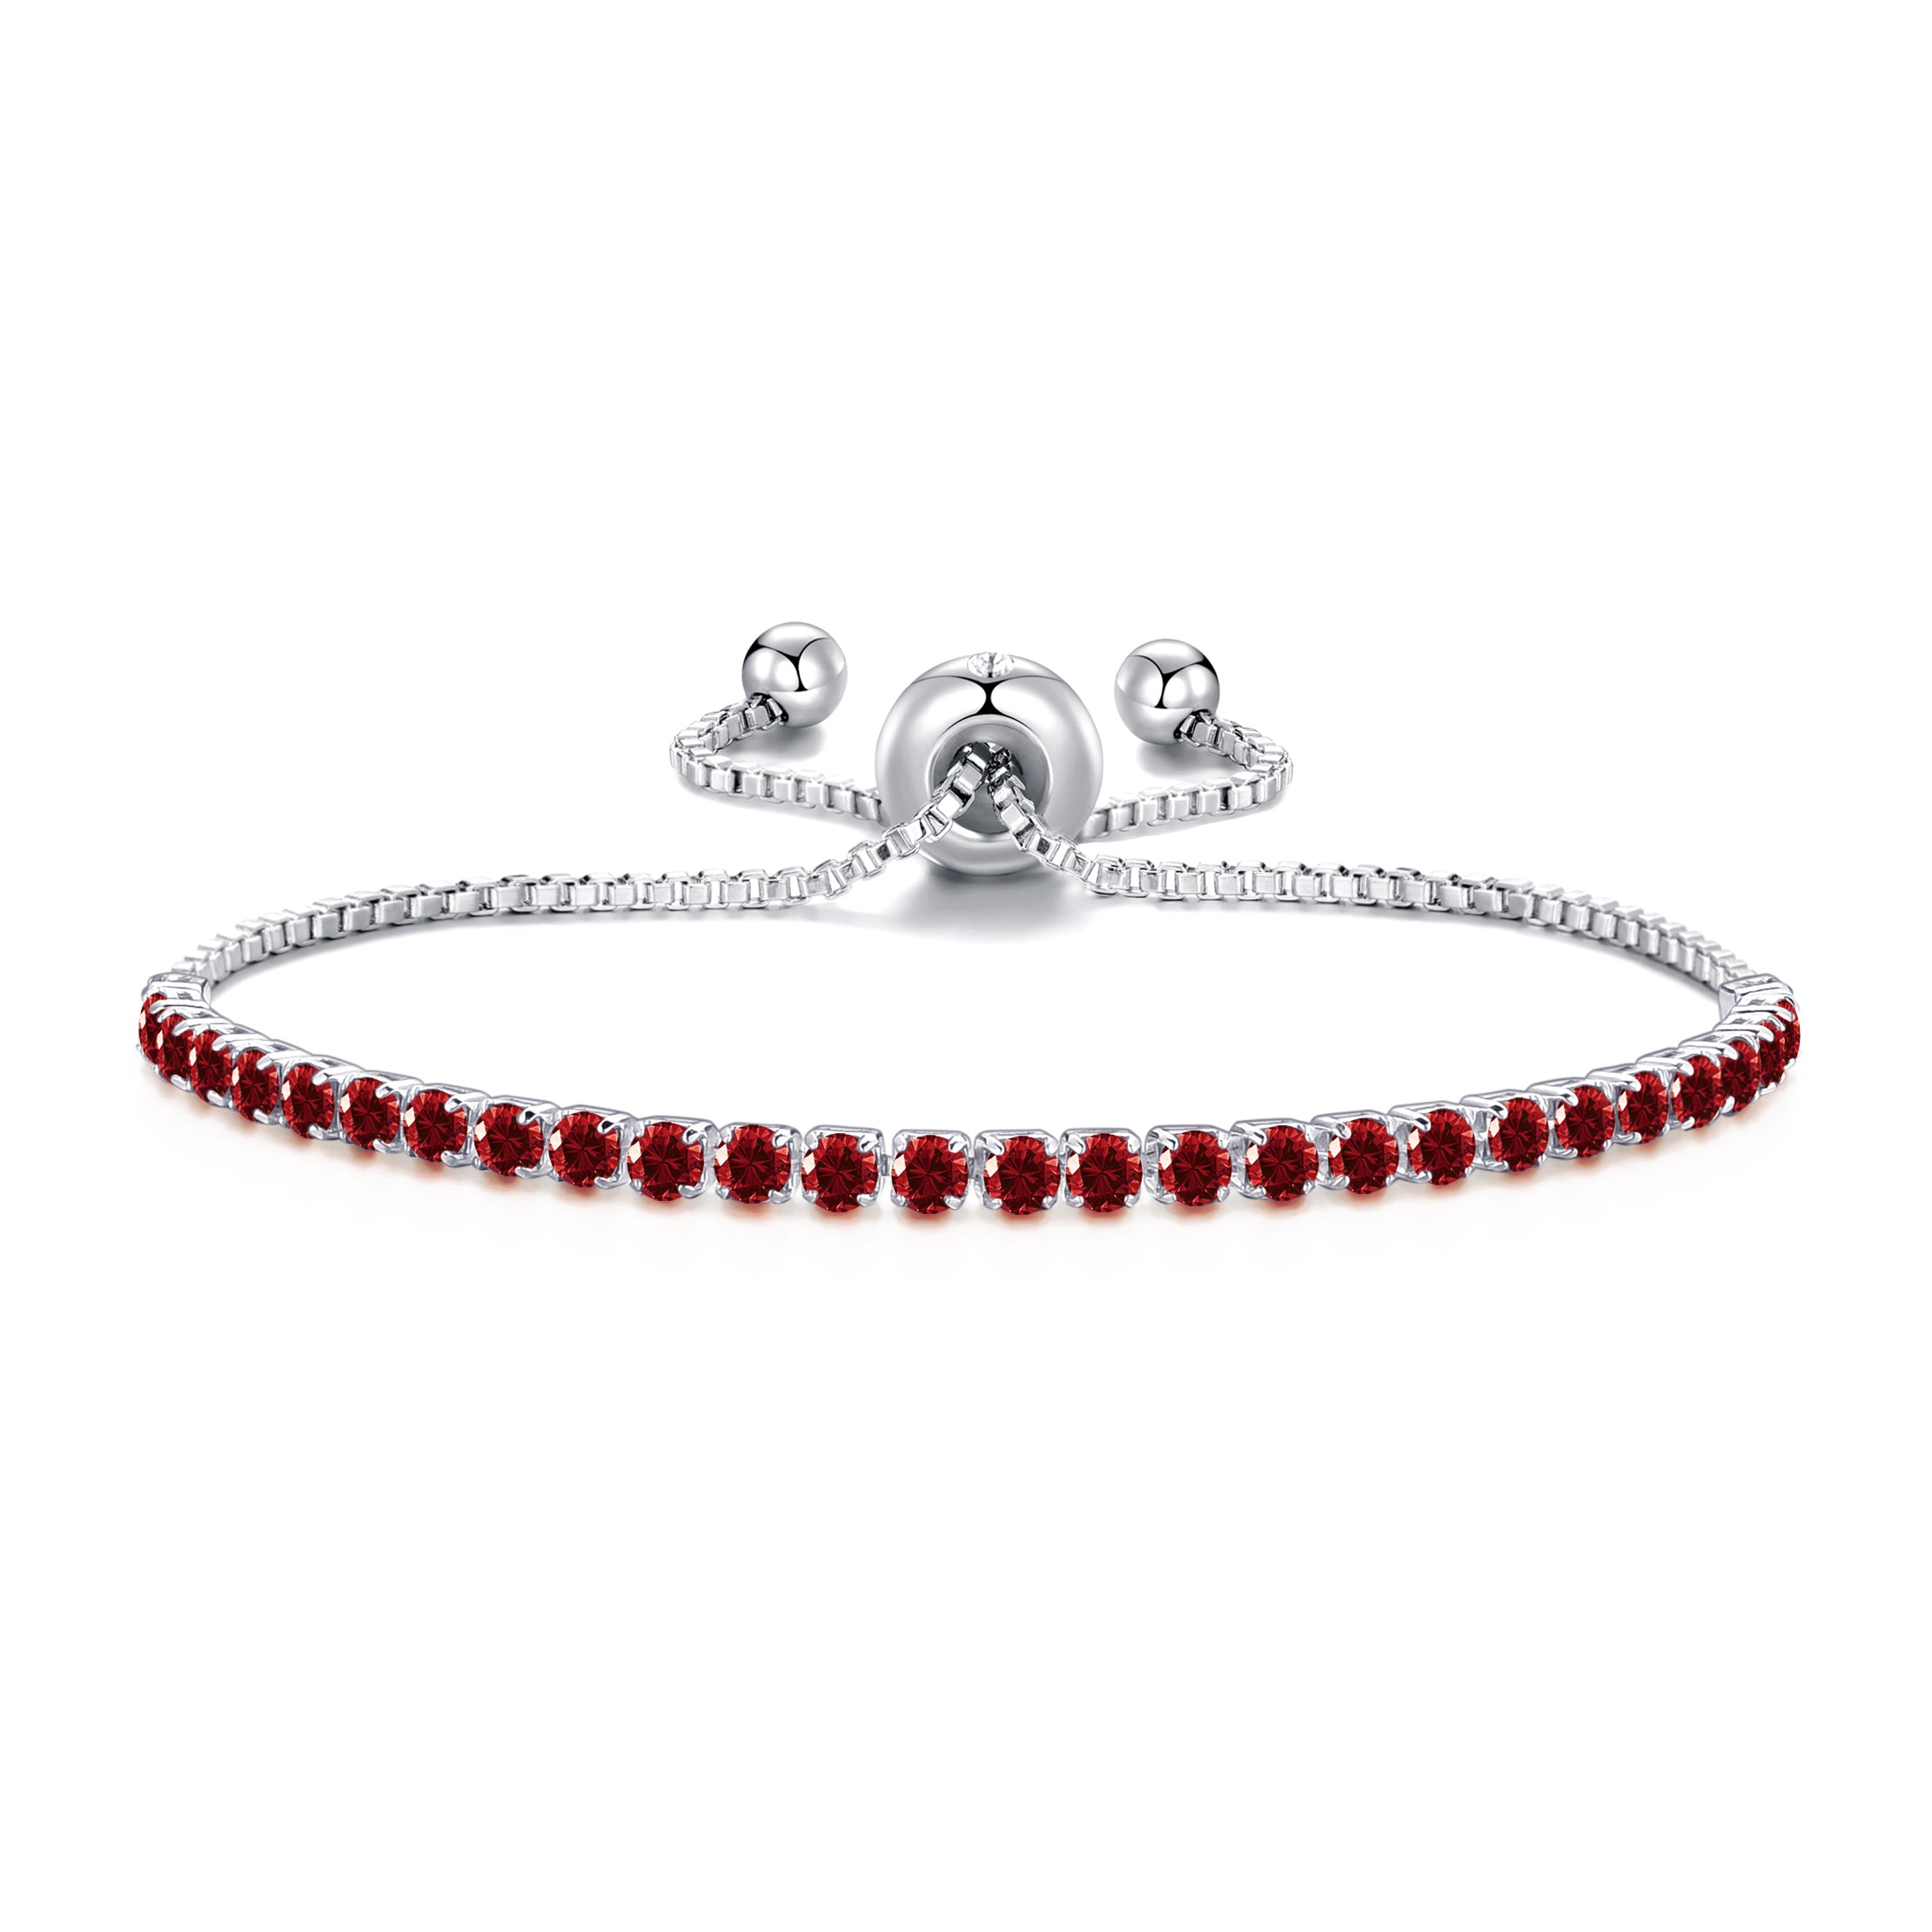 Dark Red Tennis Friendship Bracelet Created with Zircondia® Crystals